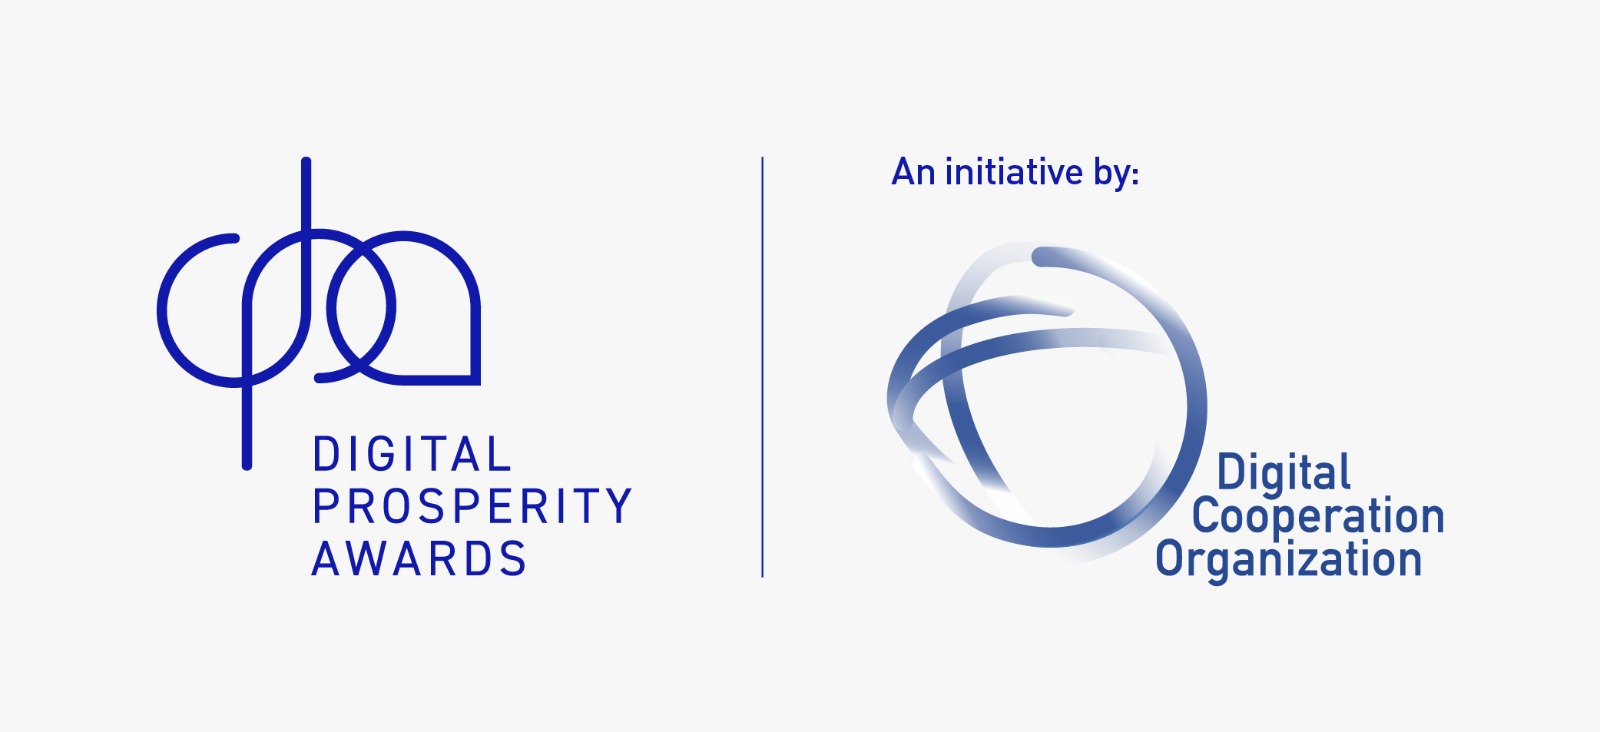 منظمة التعاون الرقمي تطلق جائزة الازدهار الرقمي